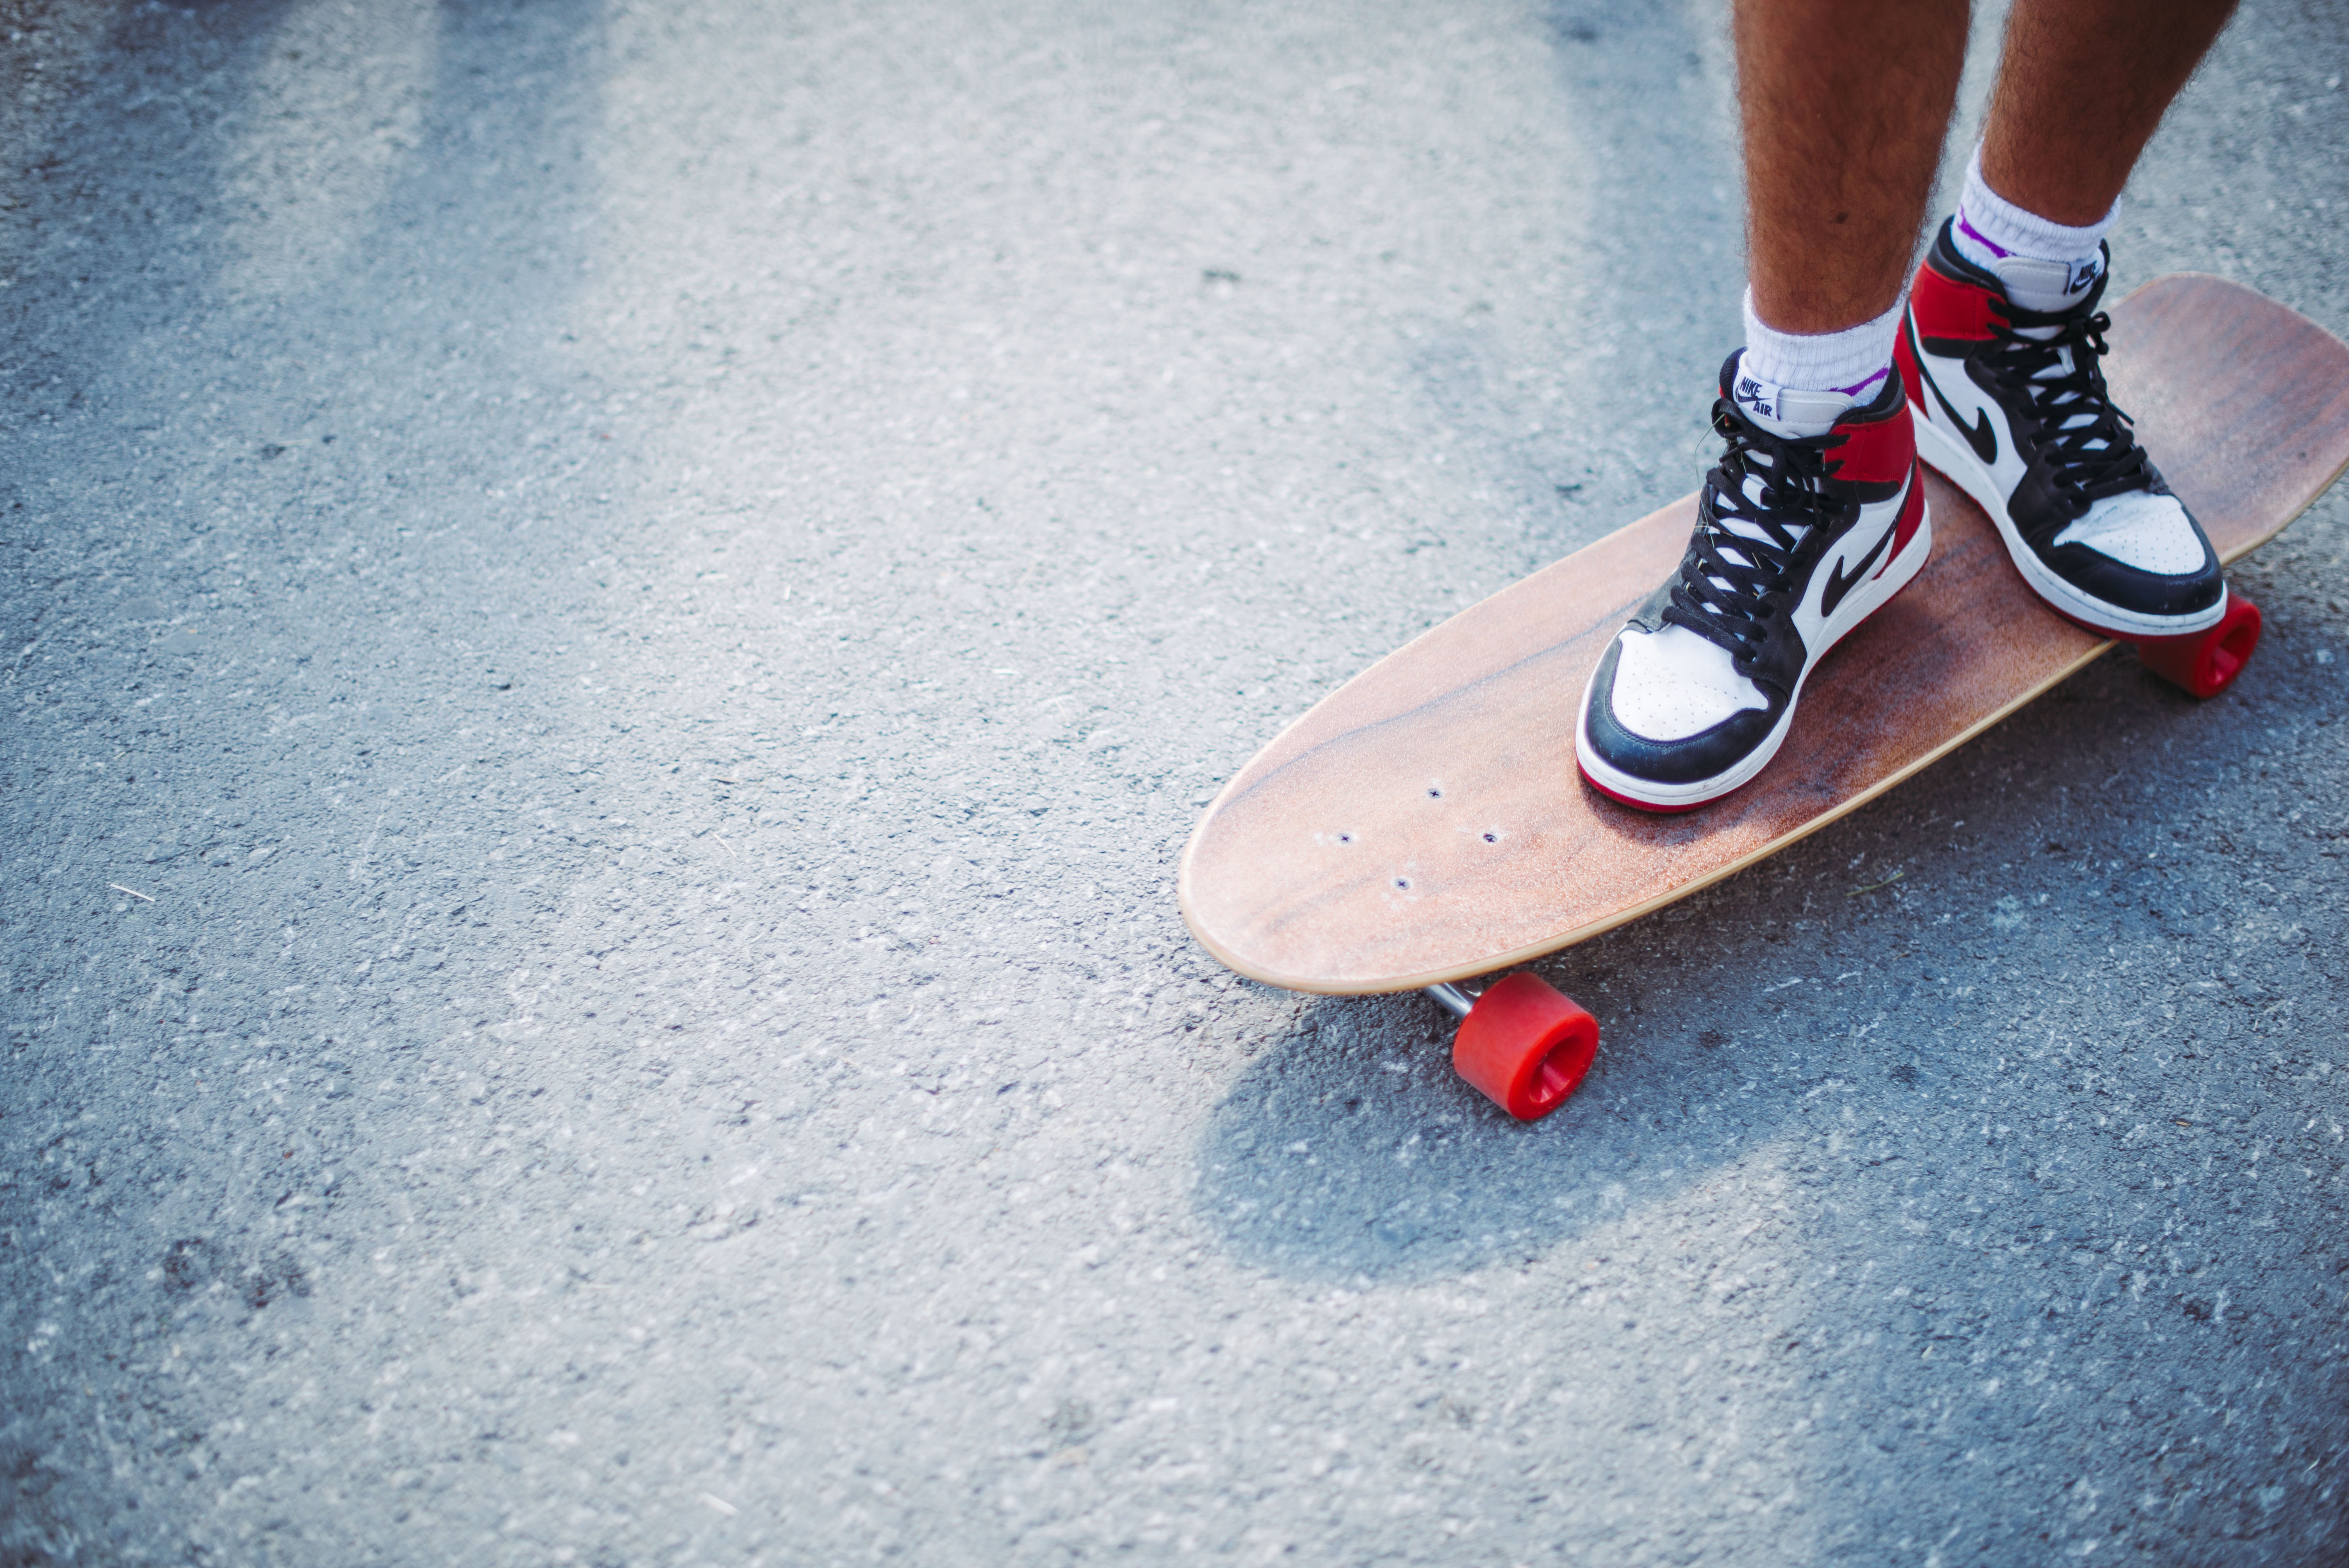 miscellanea, miscellaneous, legs, sneakers, asphalt, skateboard, longboard